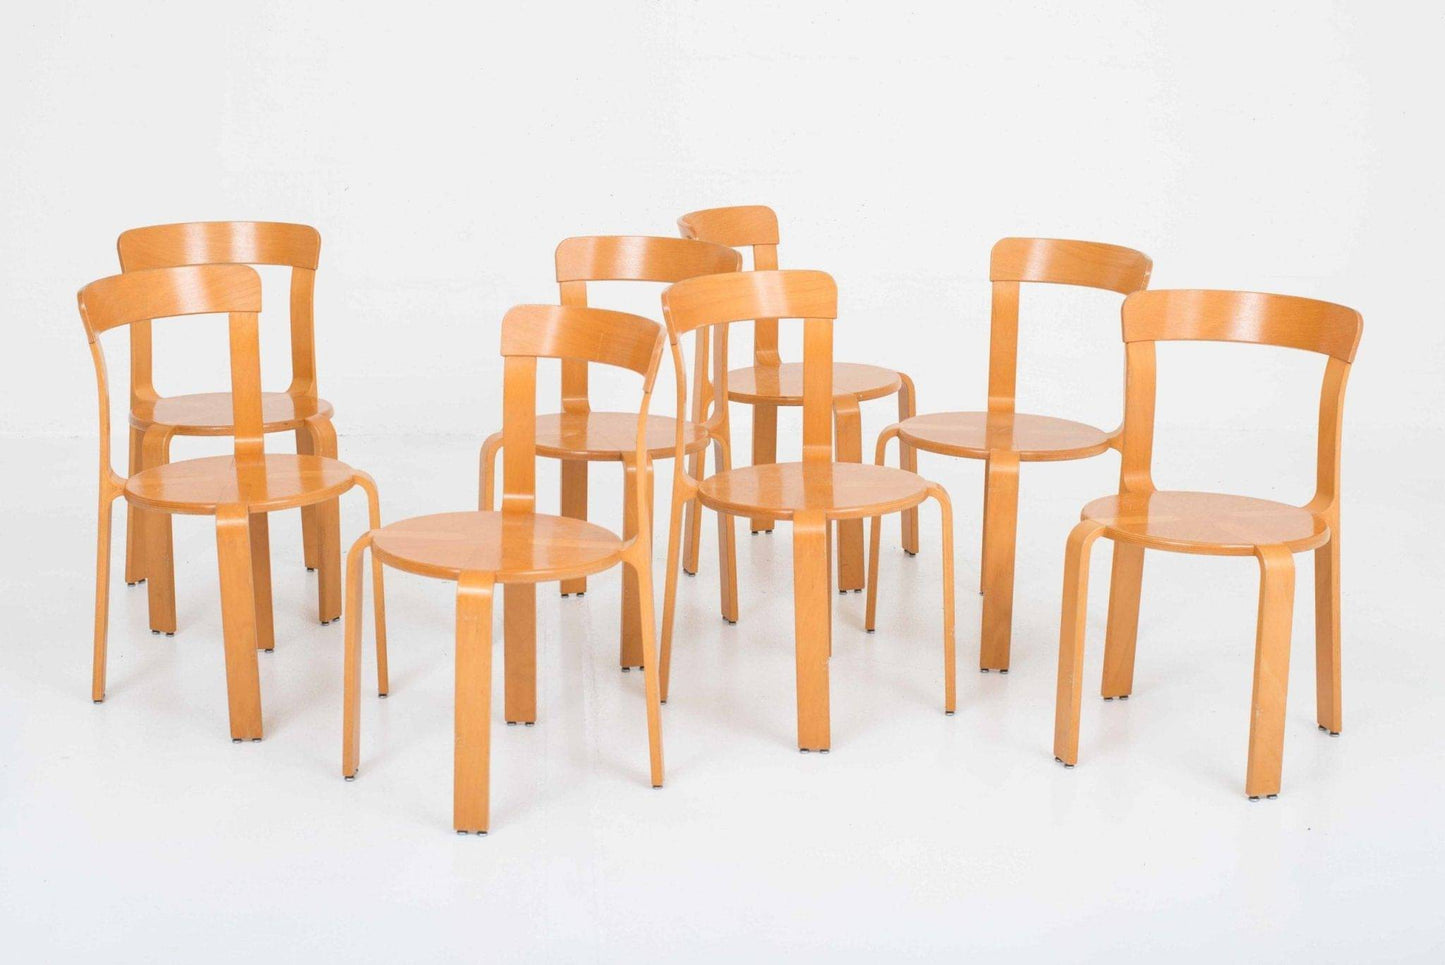 Bruno Rey chairs from Dietiker